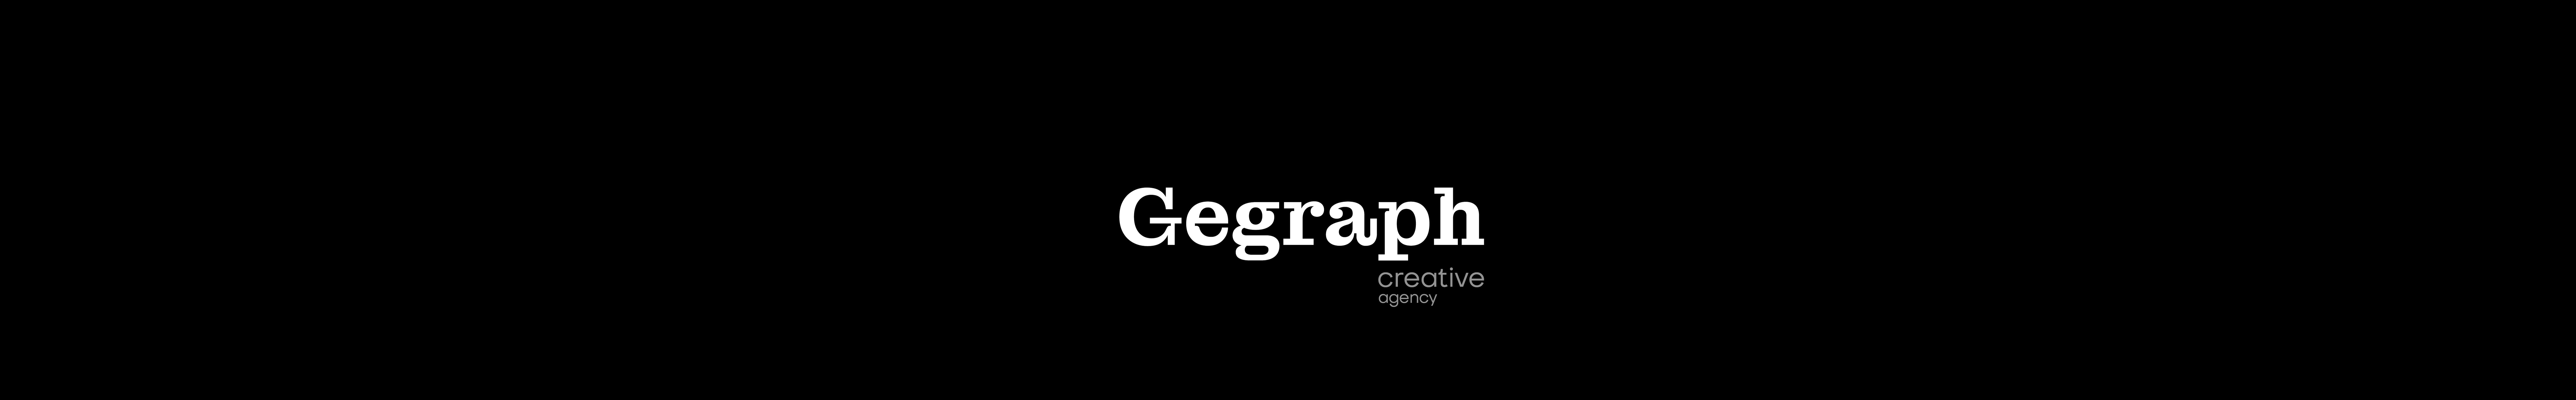 GEGRAPH agencys profilbanner